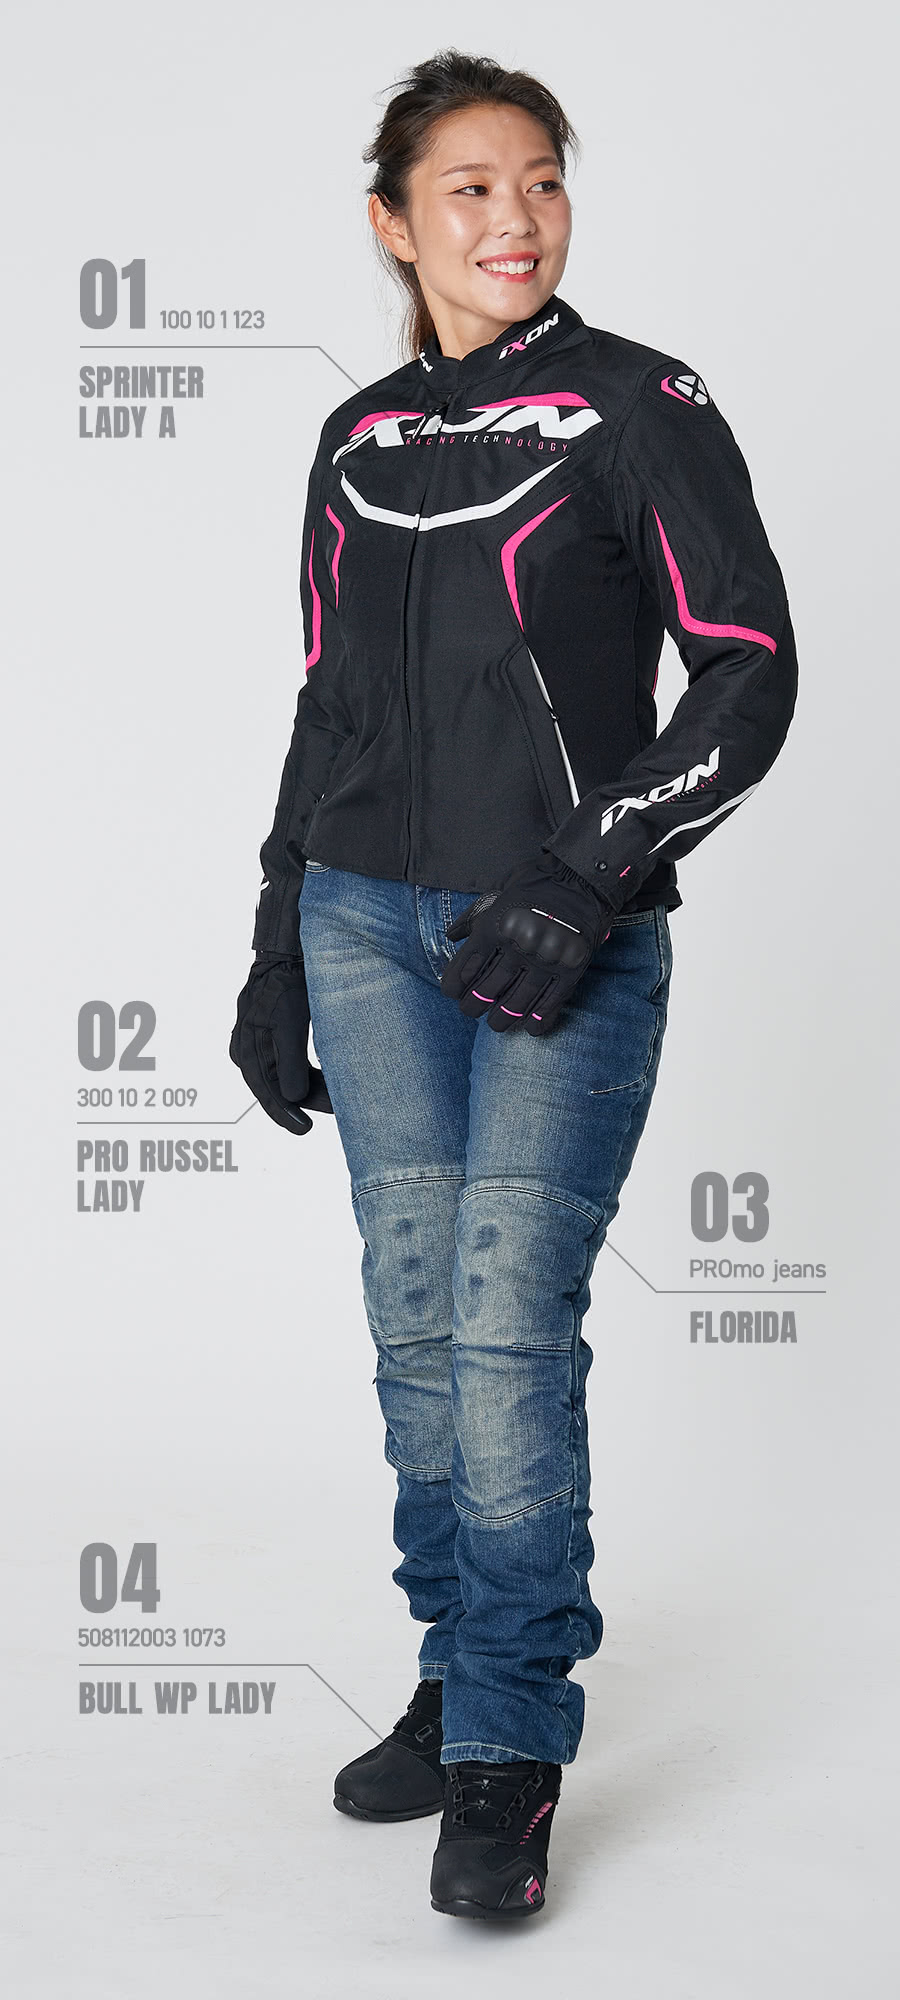 IXON SPRINTER LADY A（イクソン スプリンターレディーA） ＋ PRO RUSSEL LADY（プロラッセルレディー） ＋ BULL WP LADY（ブルWPレディー） ＋ PROmo jeans FLORIDA（プロモジーンズ フロリダ）着用イメージ